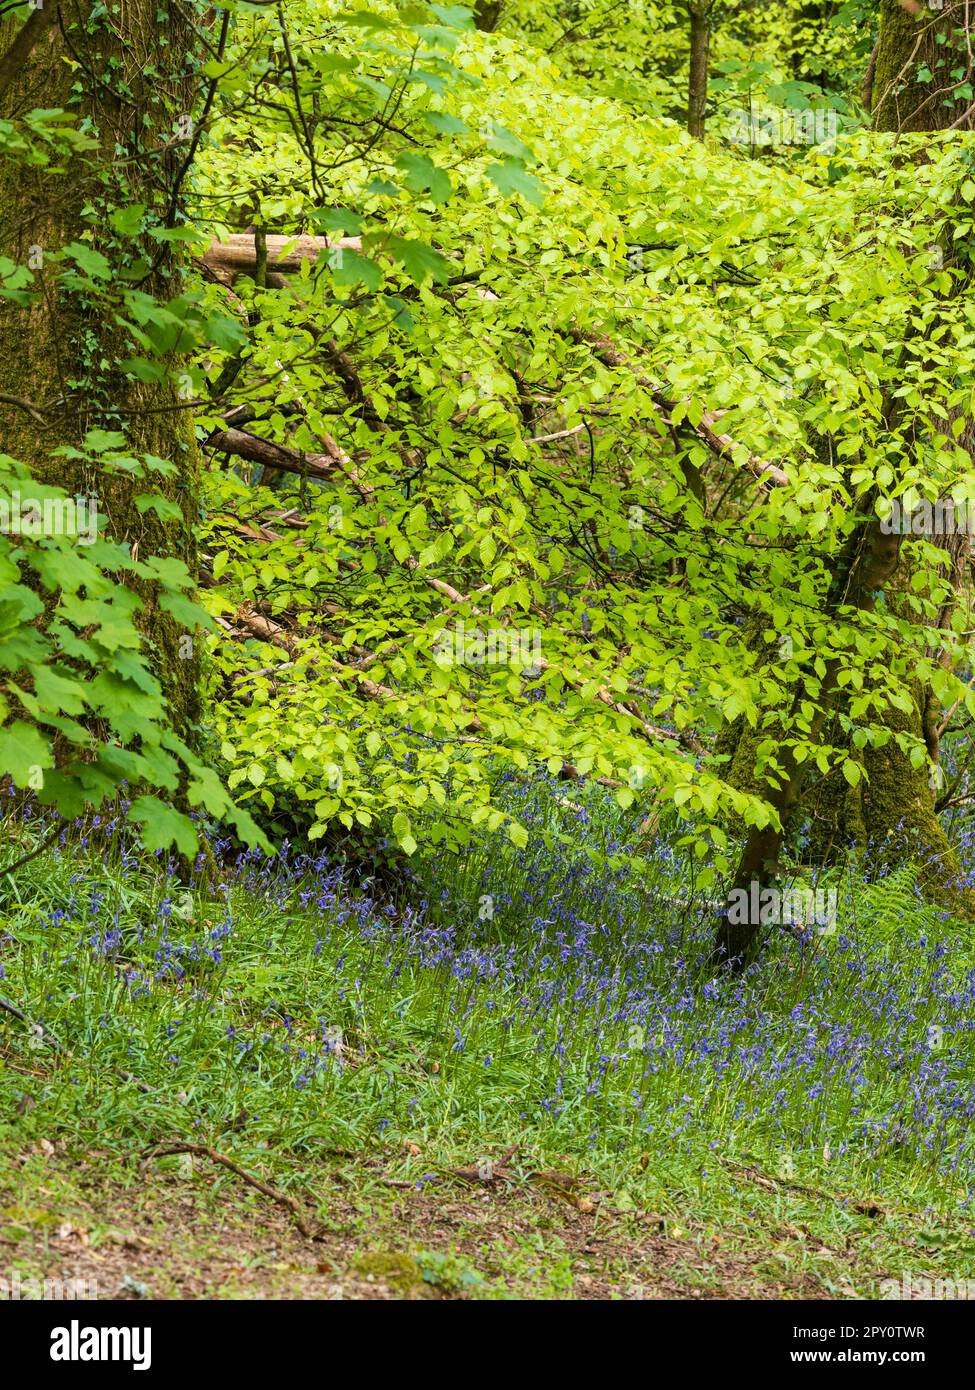 Englische Blauzungen, Hyacinthoides non-scripus, unter einem Quelldach aus Buche, Fagus sylvatica, in einem Plymouth, Devon, UK-Wald Stockfoto